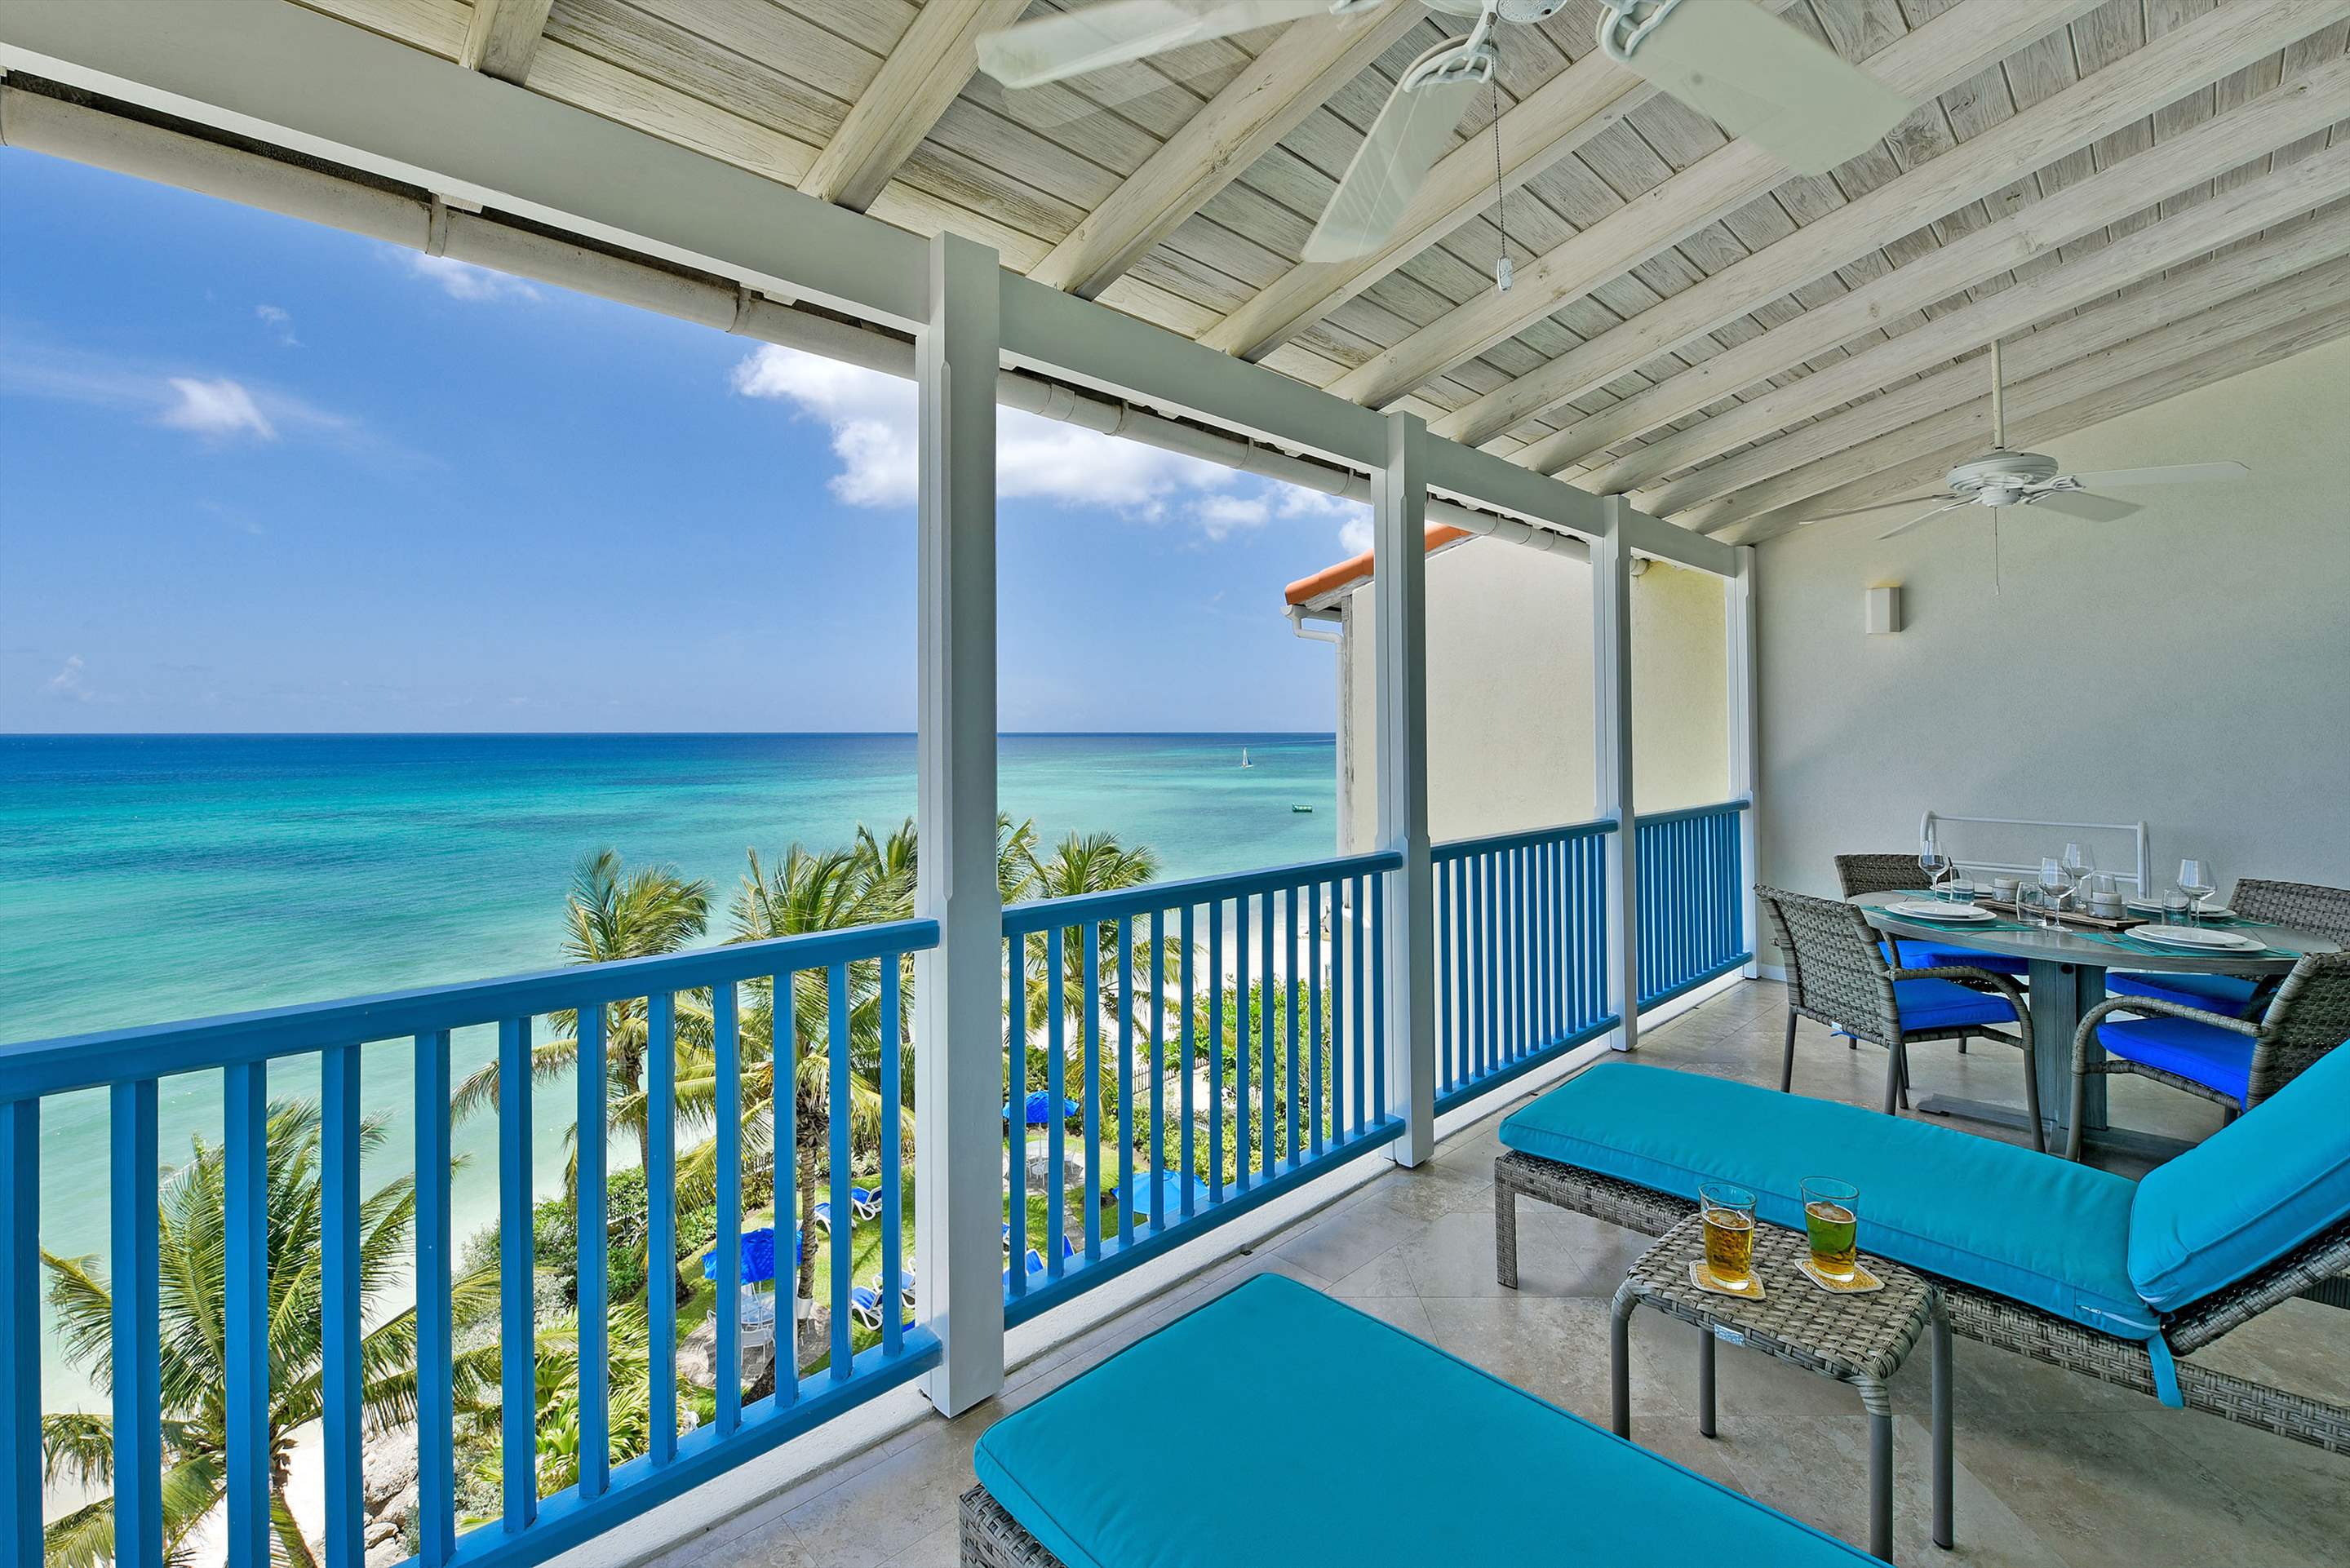 Maxwell Beach Villas 503, 2 bedroom, 2 bedroom villa in St. Lawrence Gap & South Coast, Barbados Photo #3